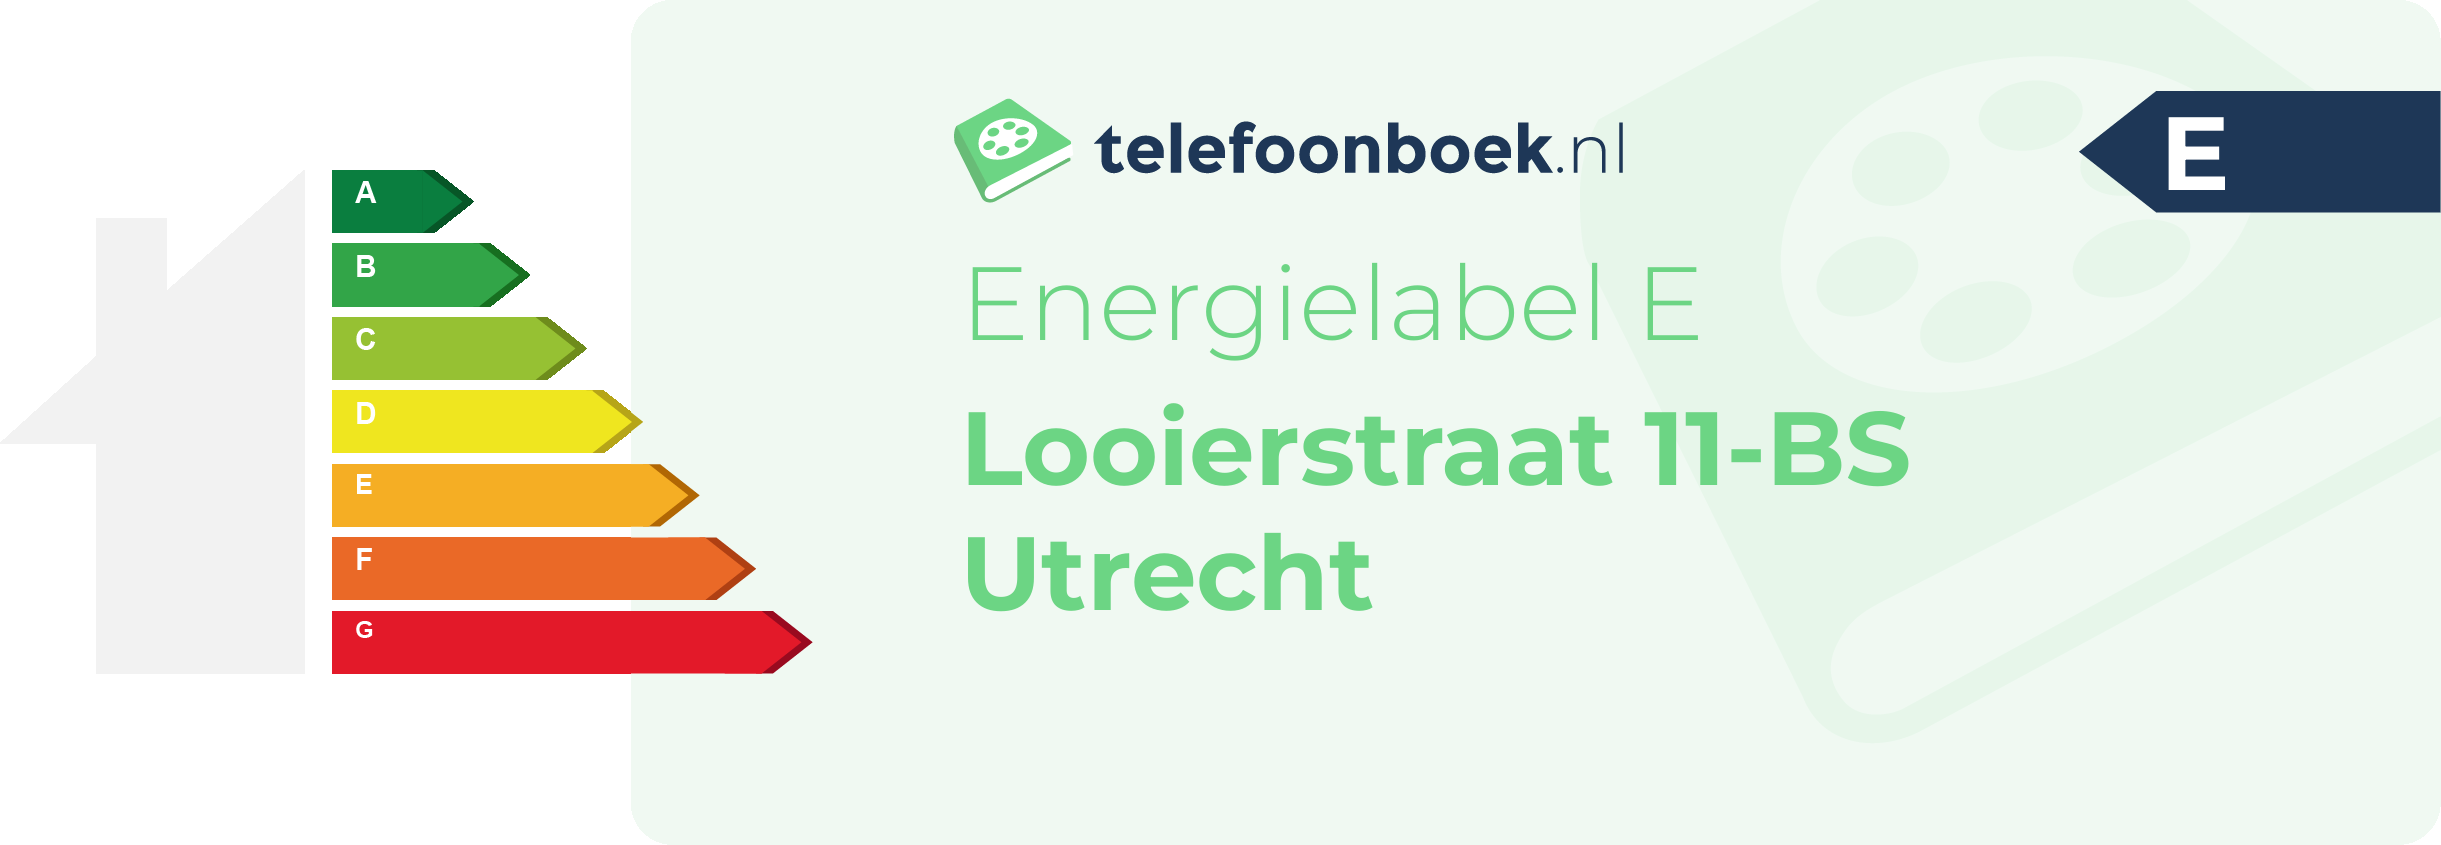 Energielabel Looierstraat 11-BS Utrecht